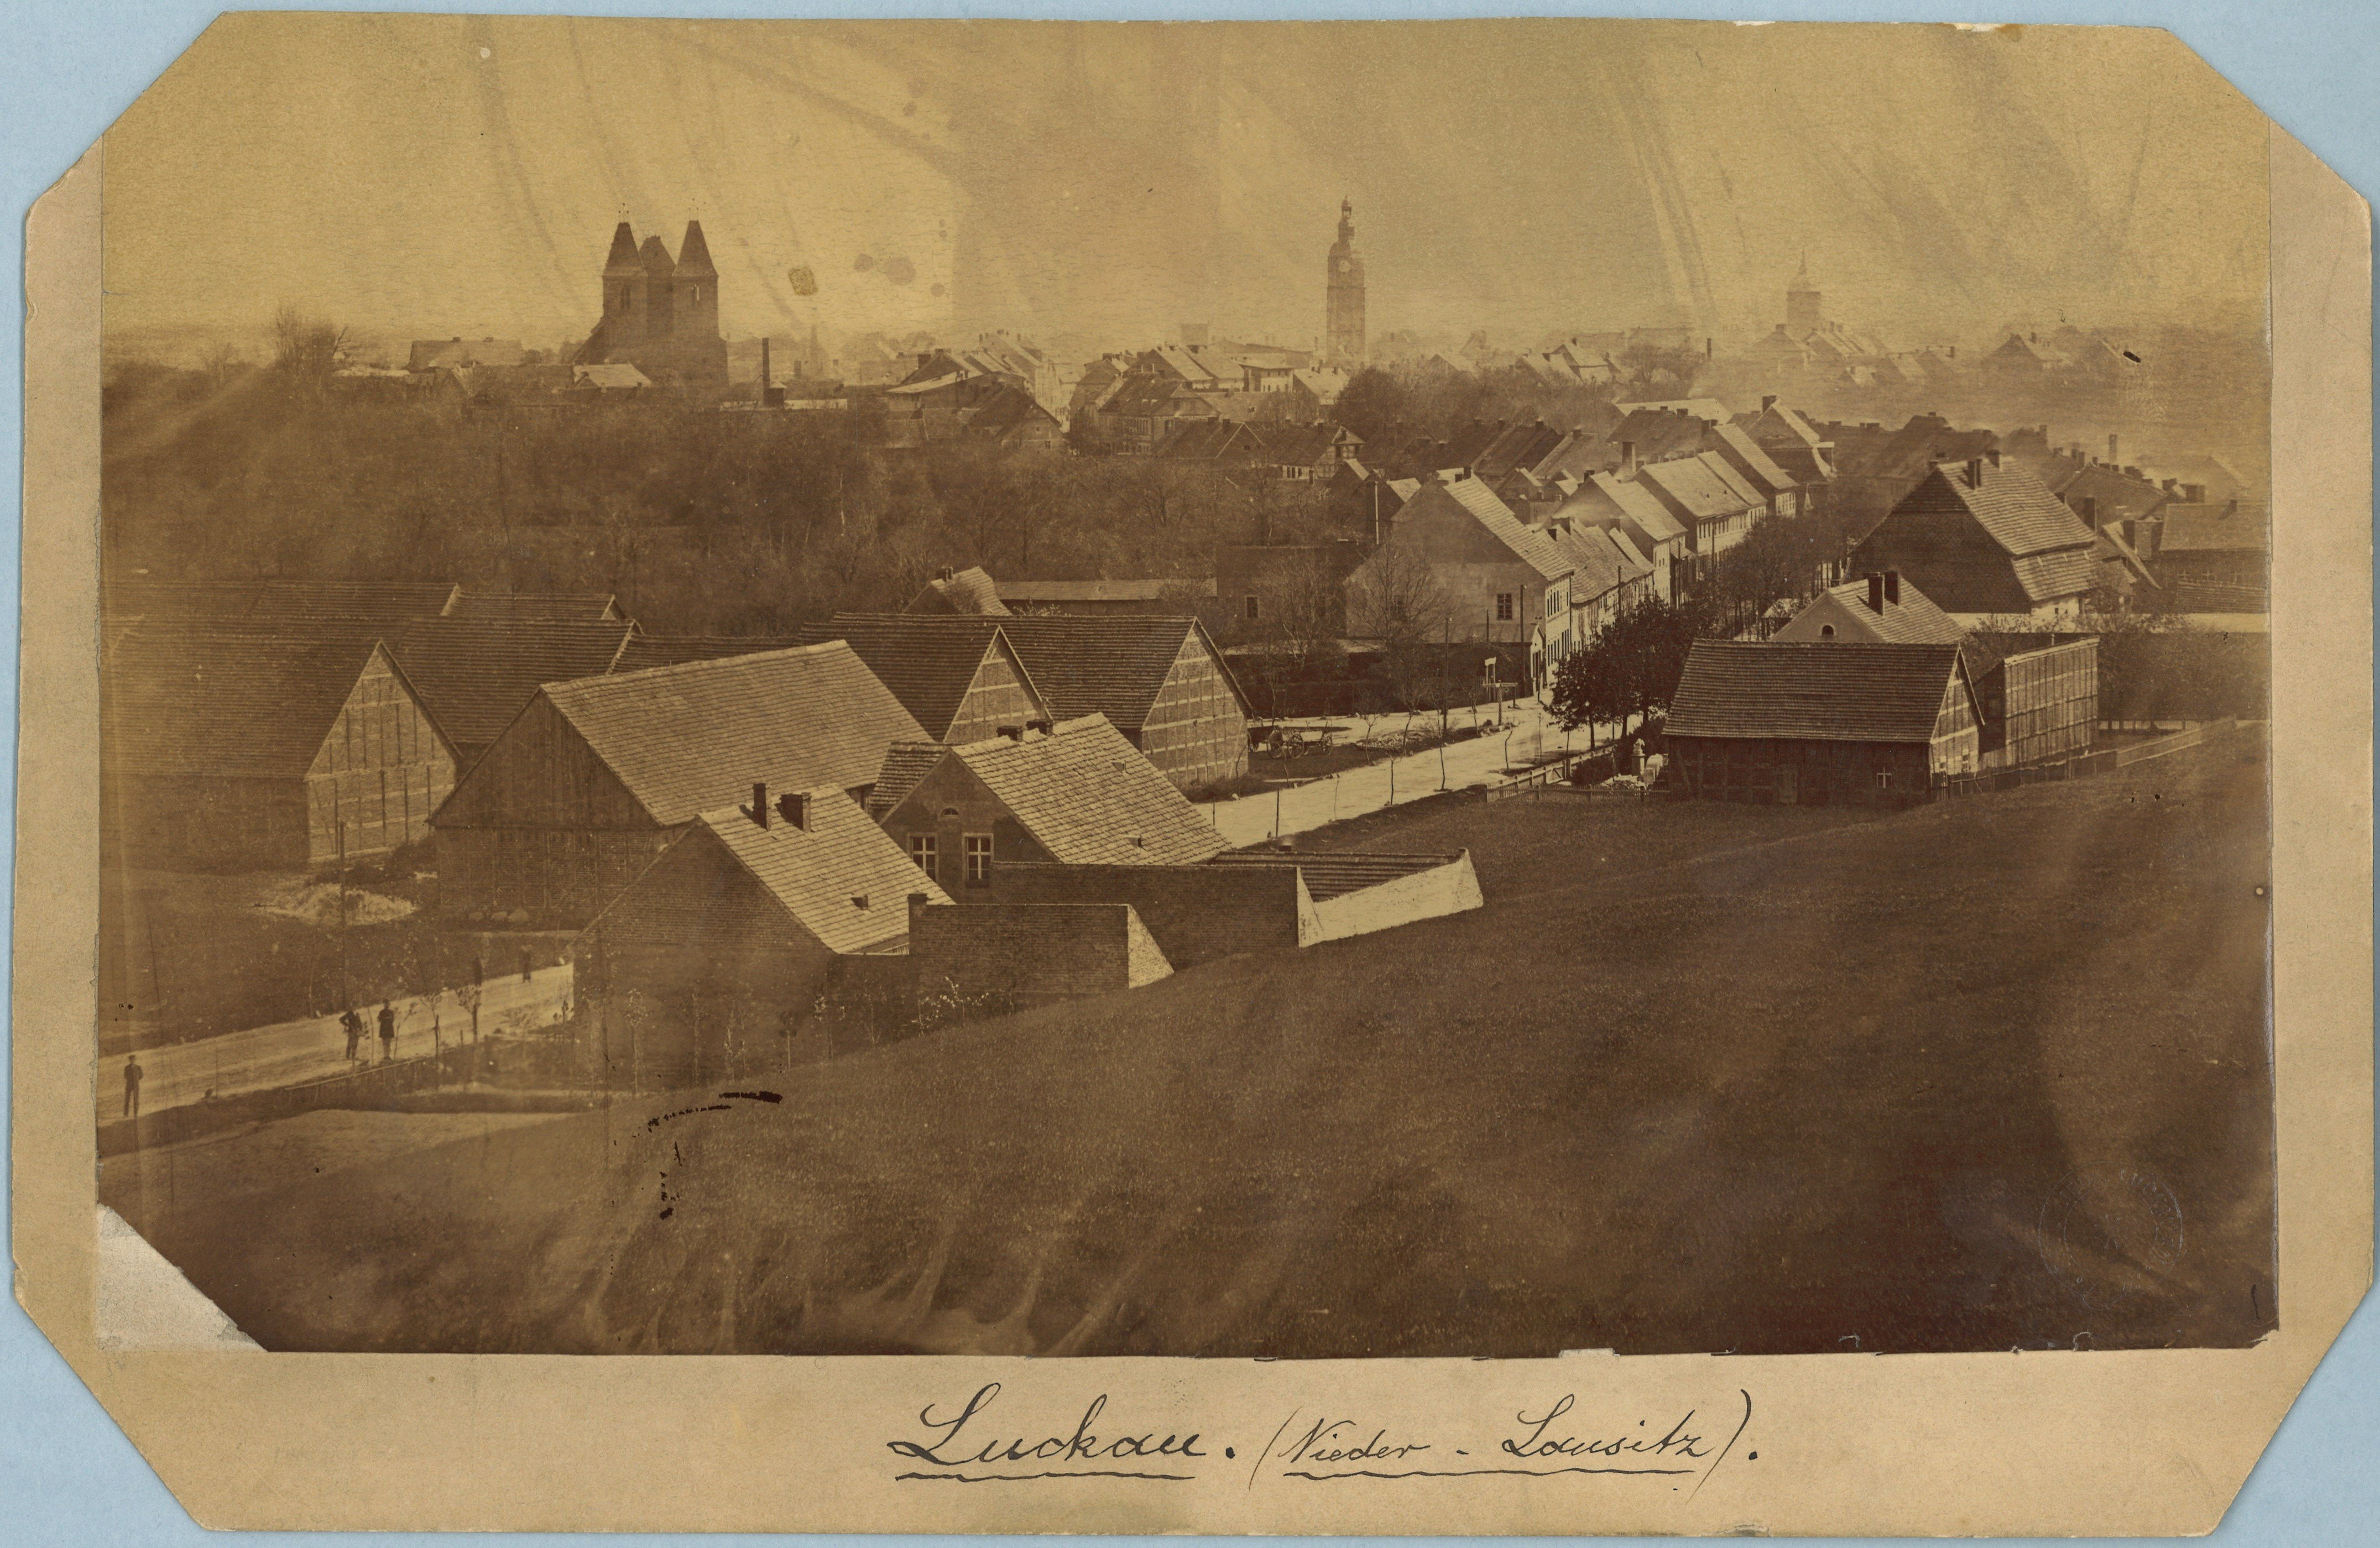 Luckau: Stadtansicht von Westen (Landesgeschichtliche Vereinigung für die Mark Brandenburg e.V., Archiv CC BY)